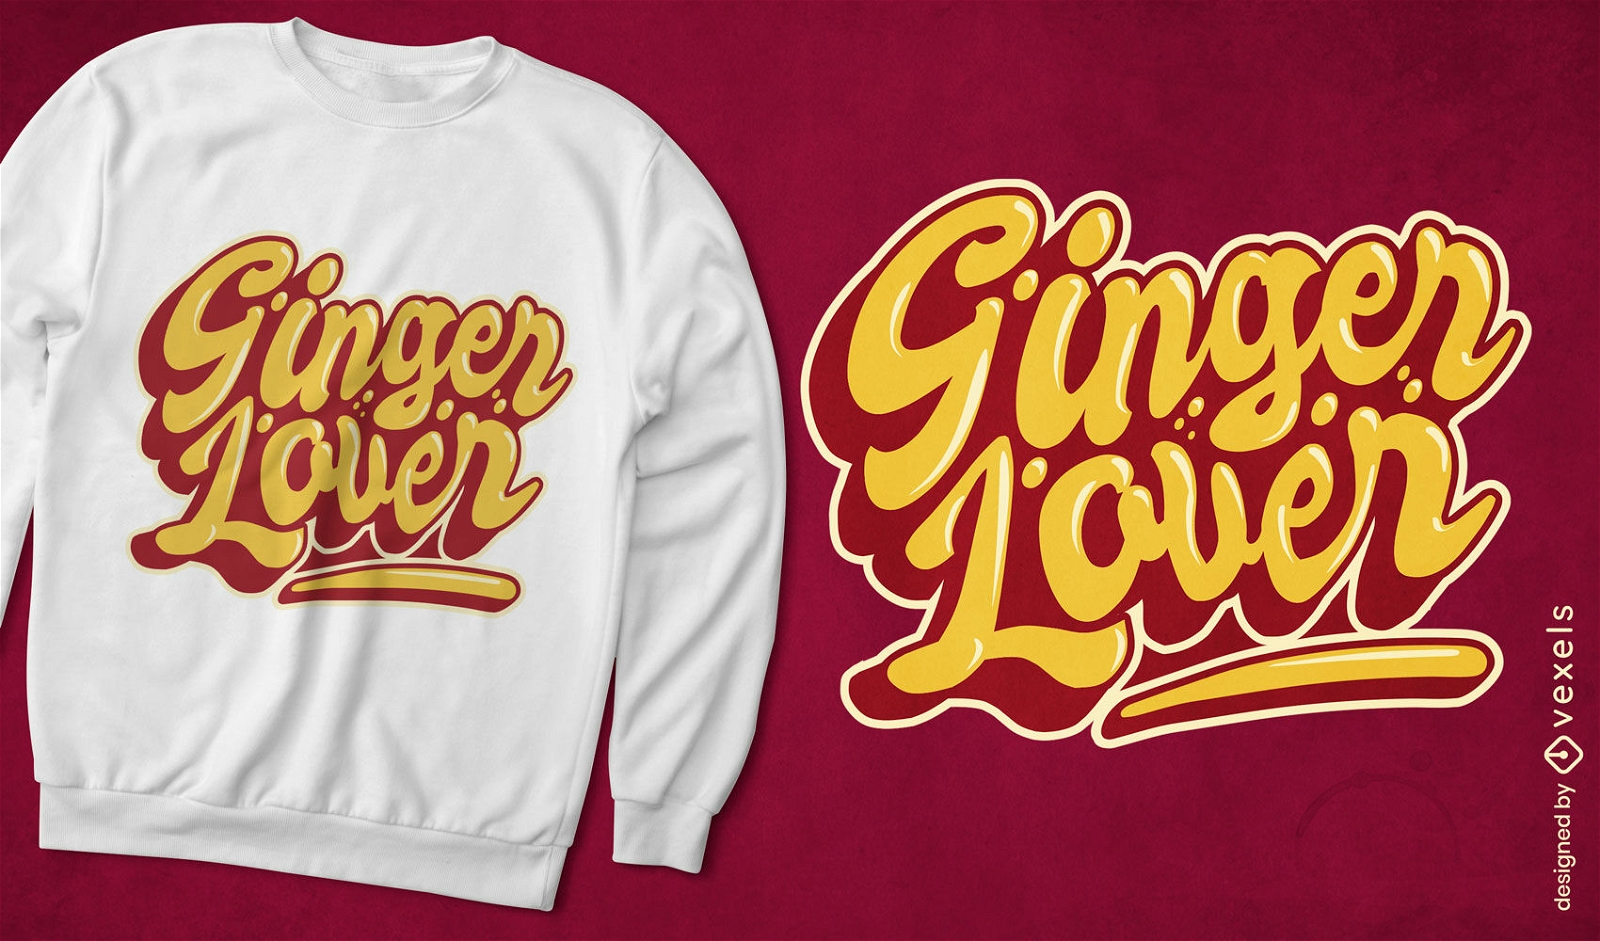 Ginger lover t-shirt design